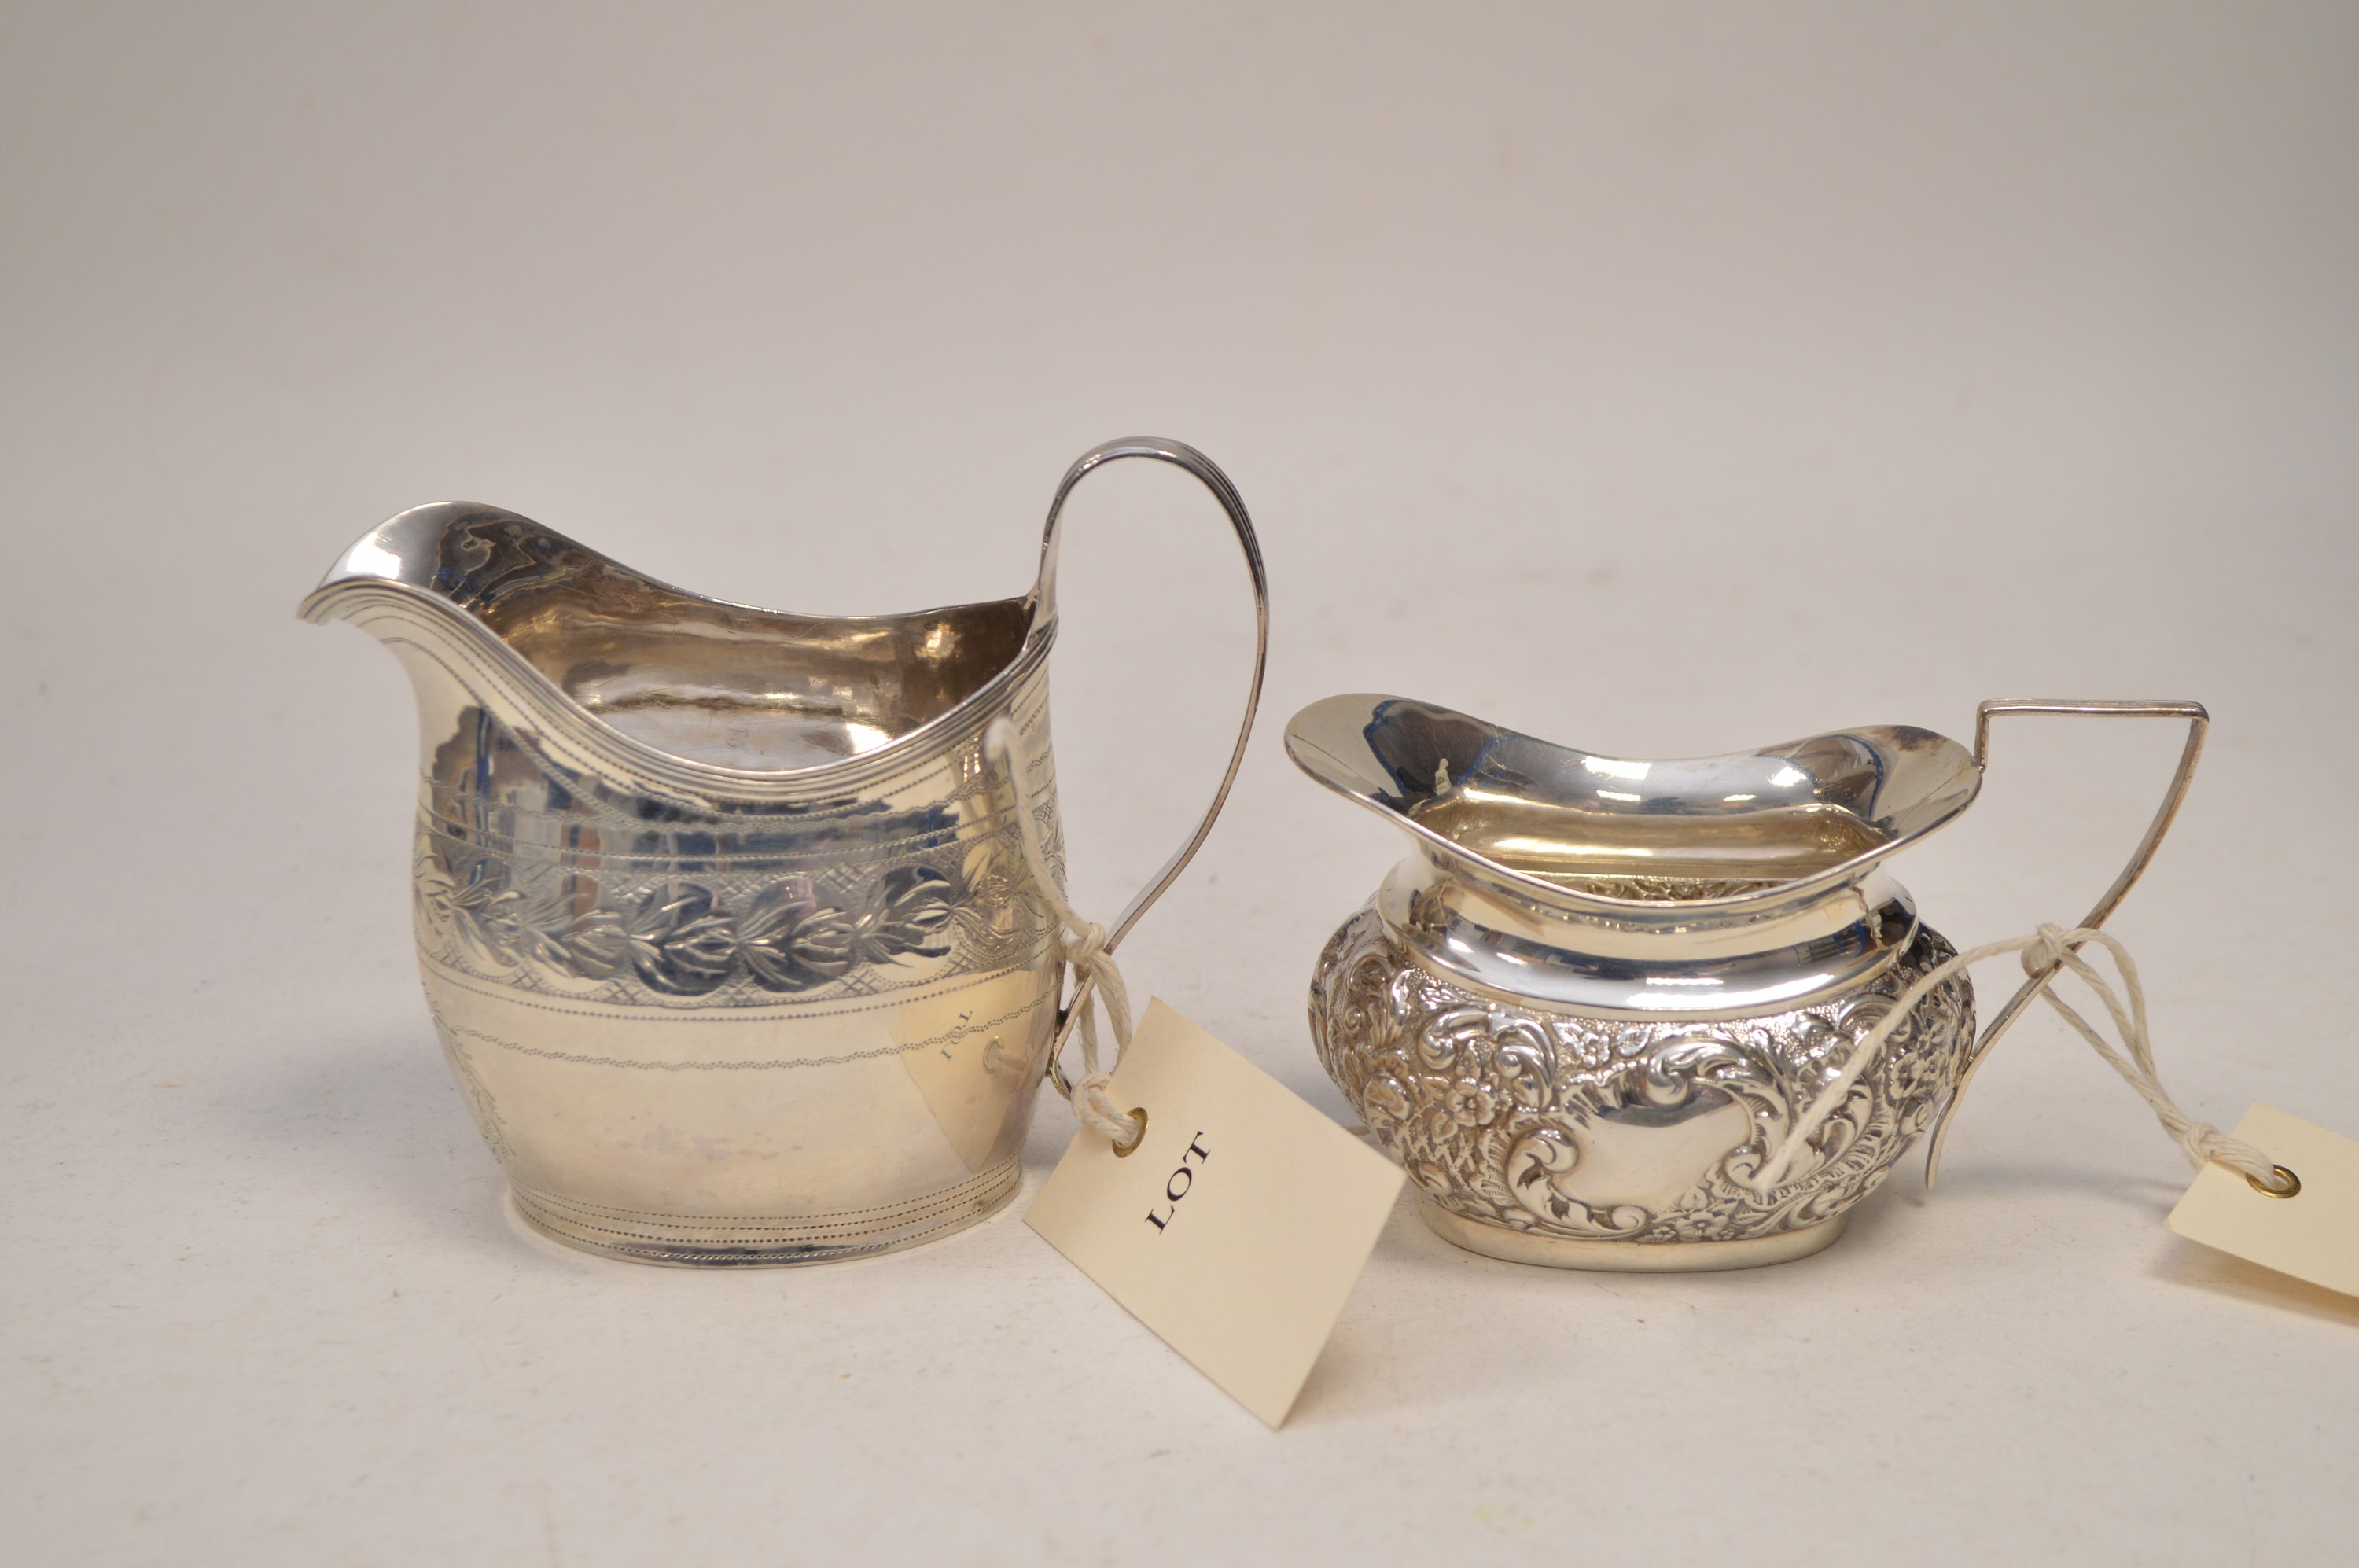 Two silver jugs